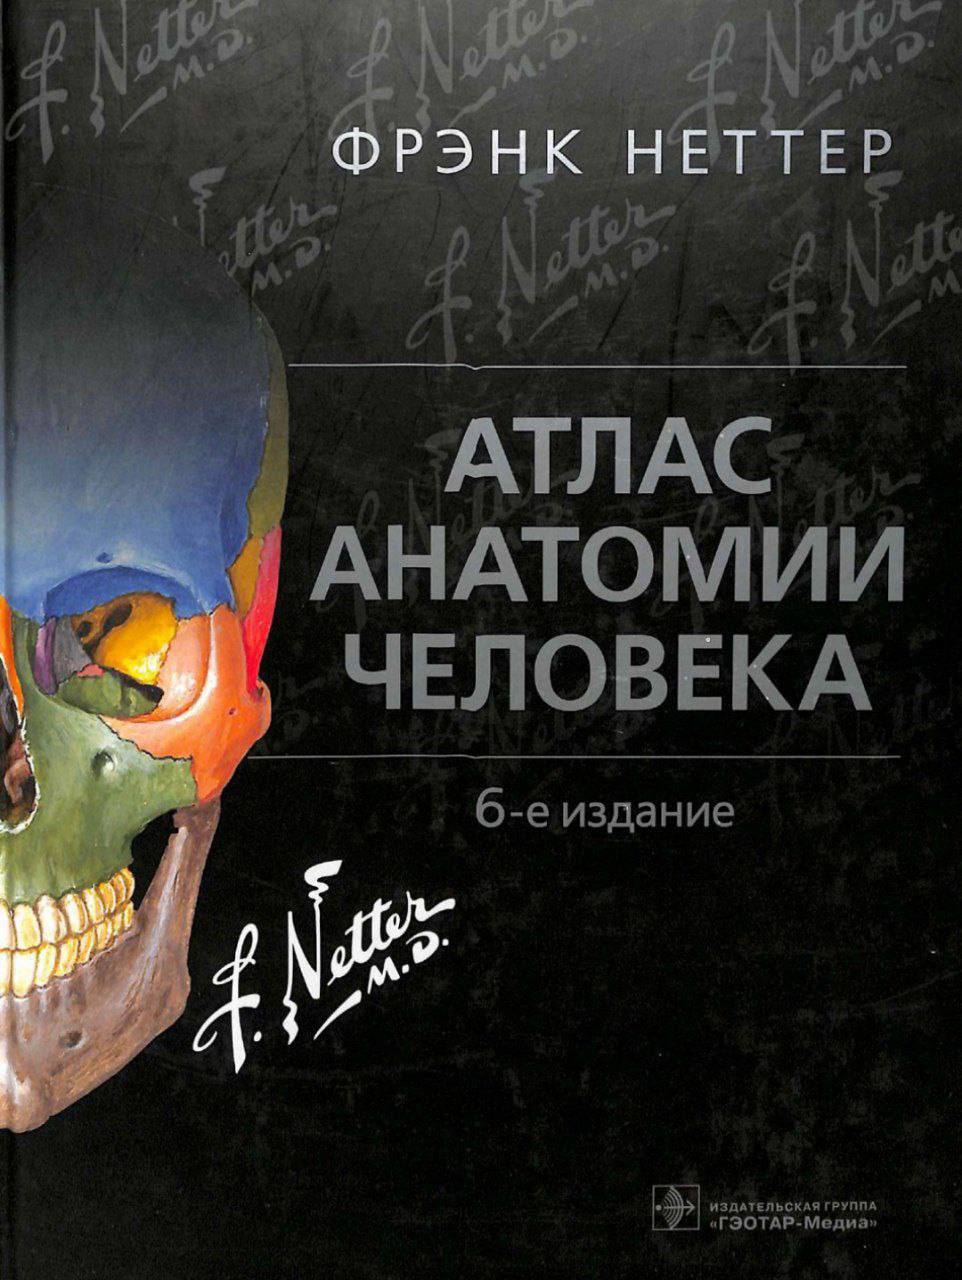 Фрэнк неттер. Atlas of Human Anatomy Frank h. Netter. Фрэнк Неттер анатомия 6 издание. Atlas of Human Anatomy (Frank h. Netter) 6th Edition. Фрэнк Неттер анатомия.